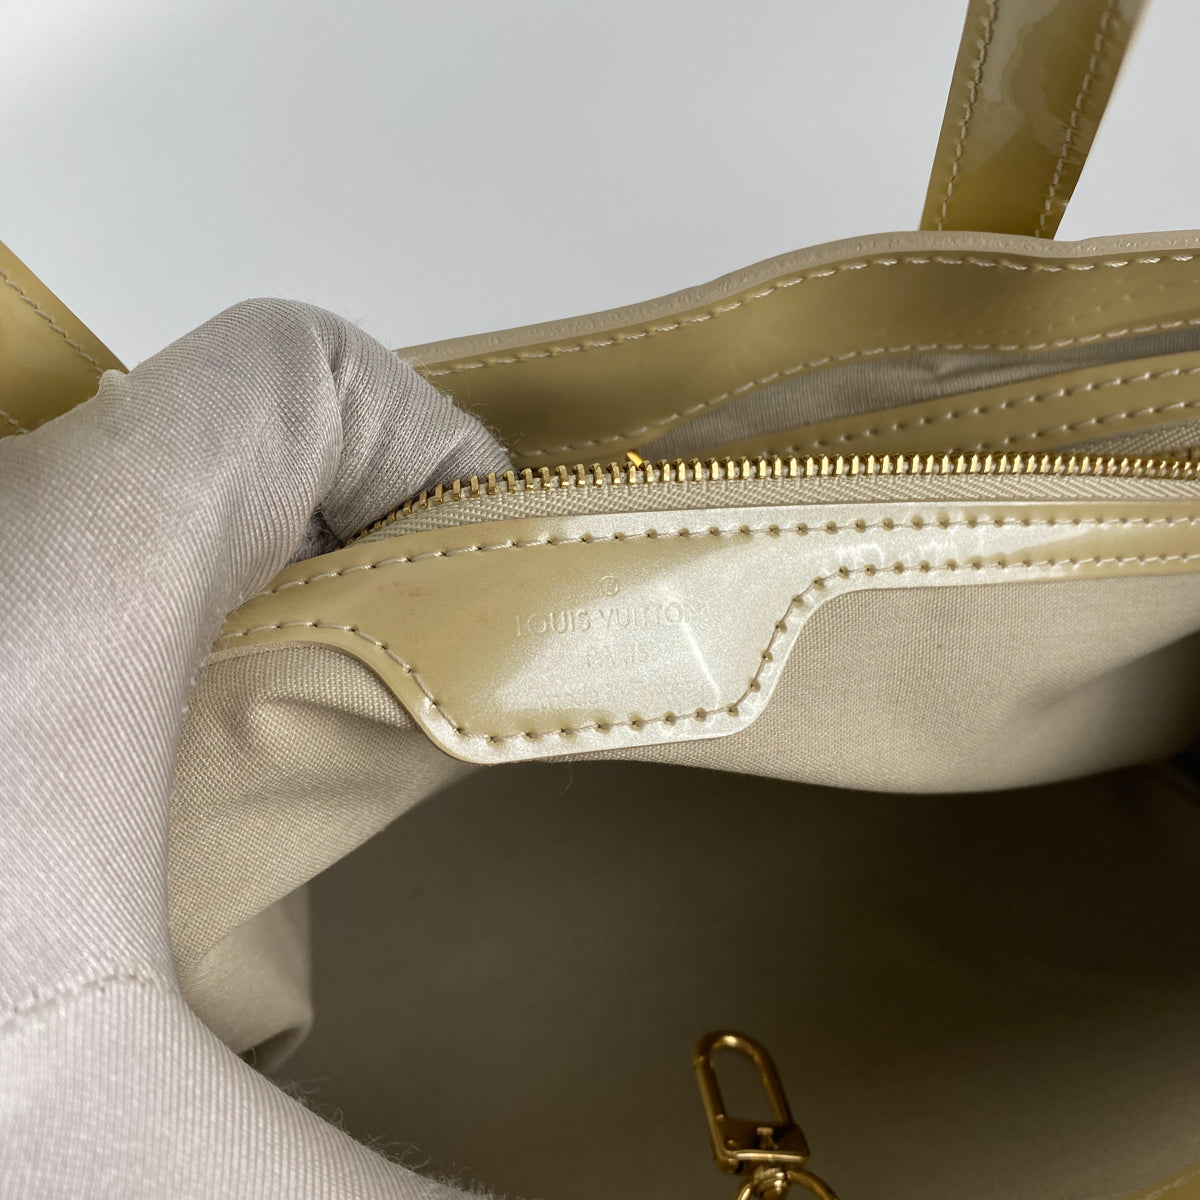 Louis Vuitton Monogram Vernis Wilshire Pm Hand Bag Broncorail M91452